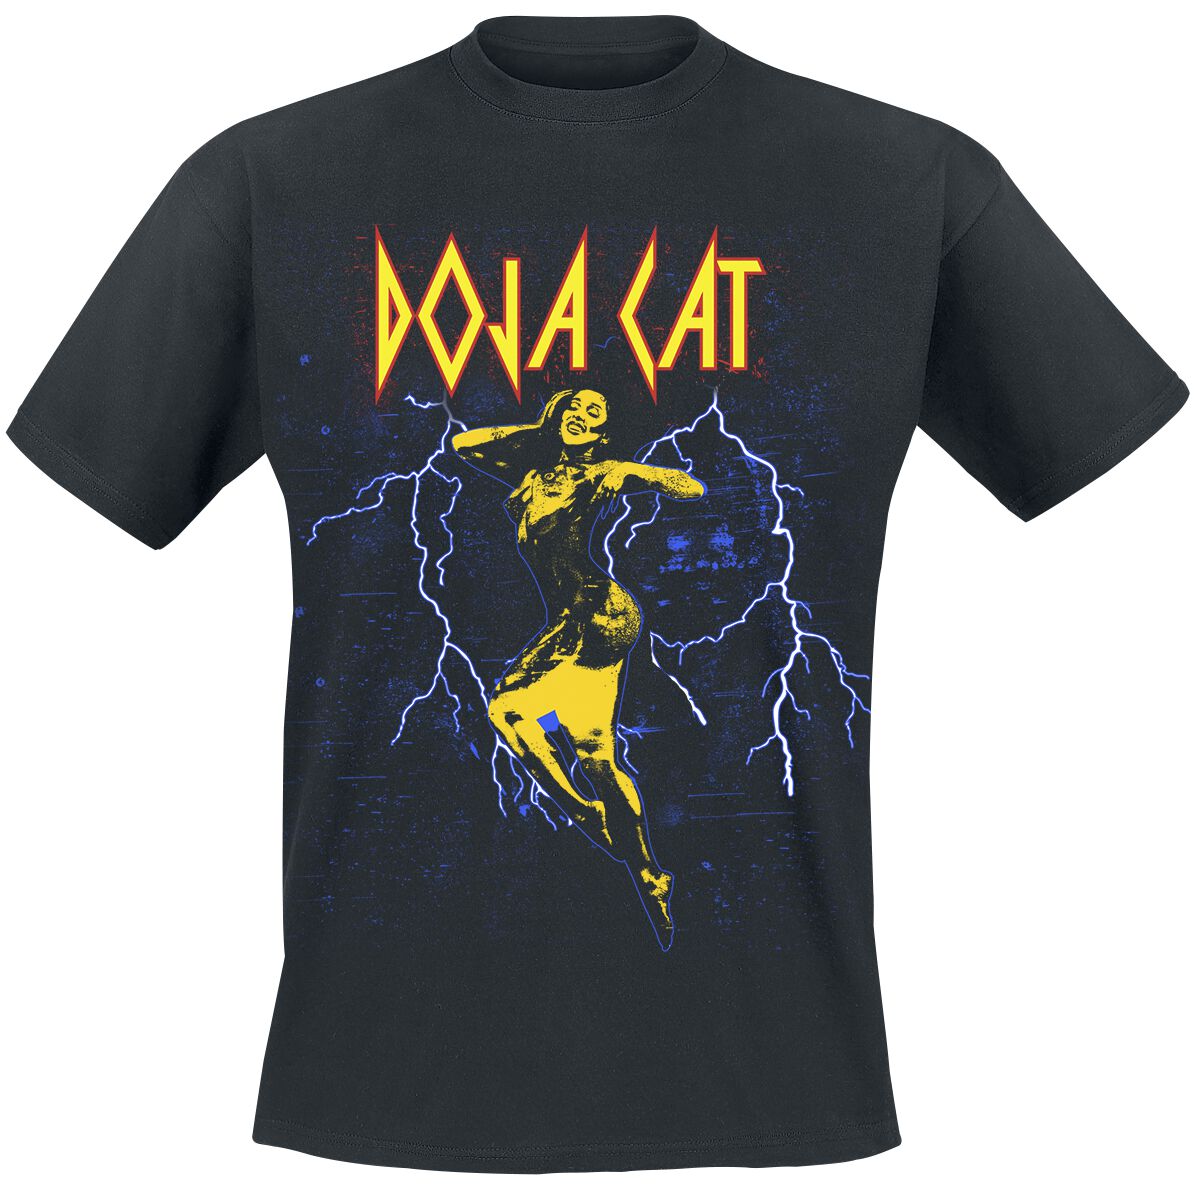 Doja Cat T-Shirt - Planet Her Lightning - L bis 3XL - für Männer - Größe L - schwarz  - Lizenziertes Merchandise!